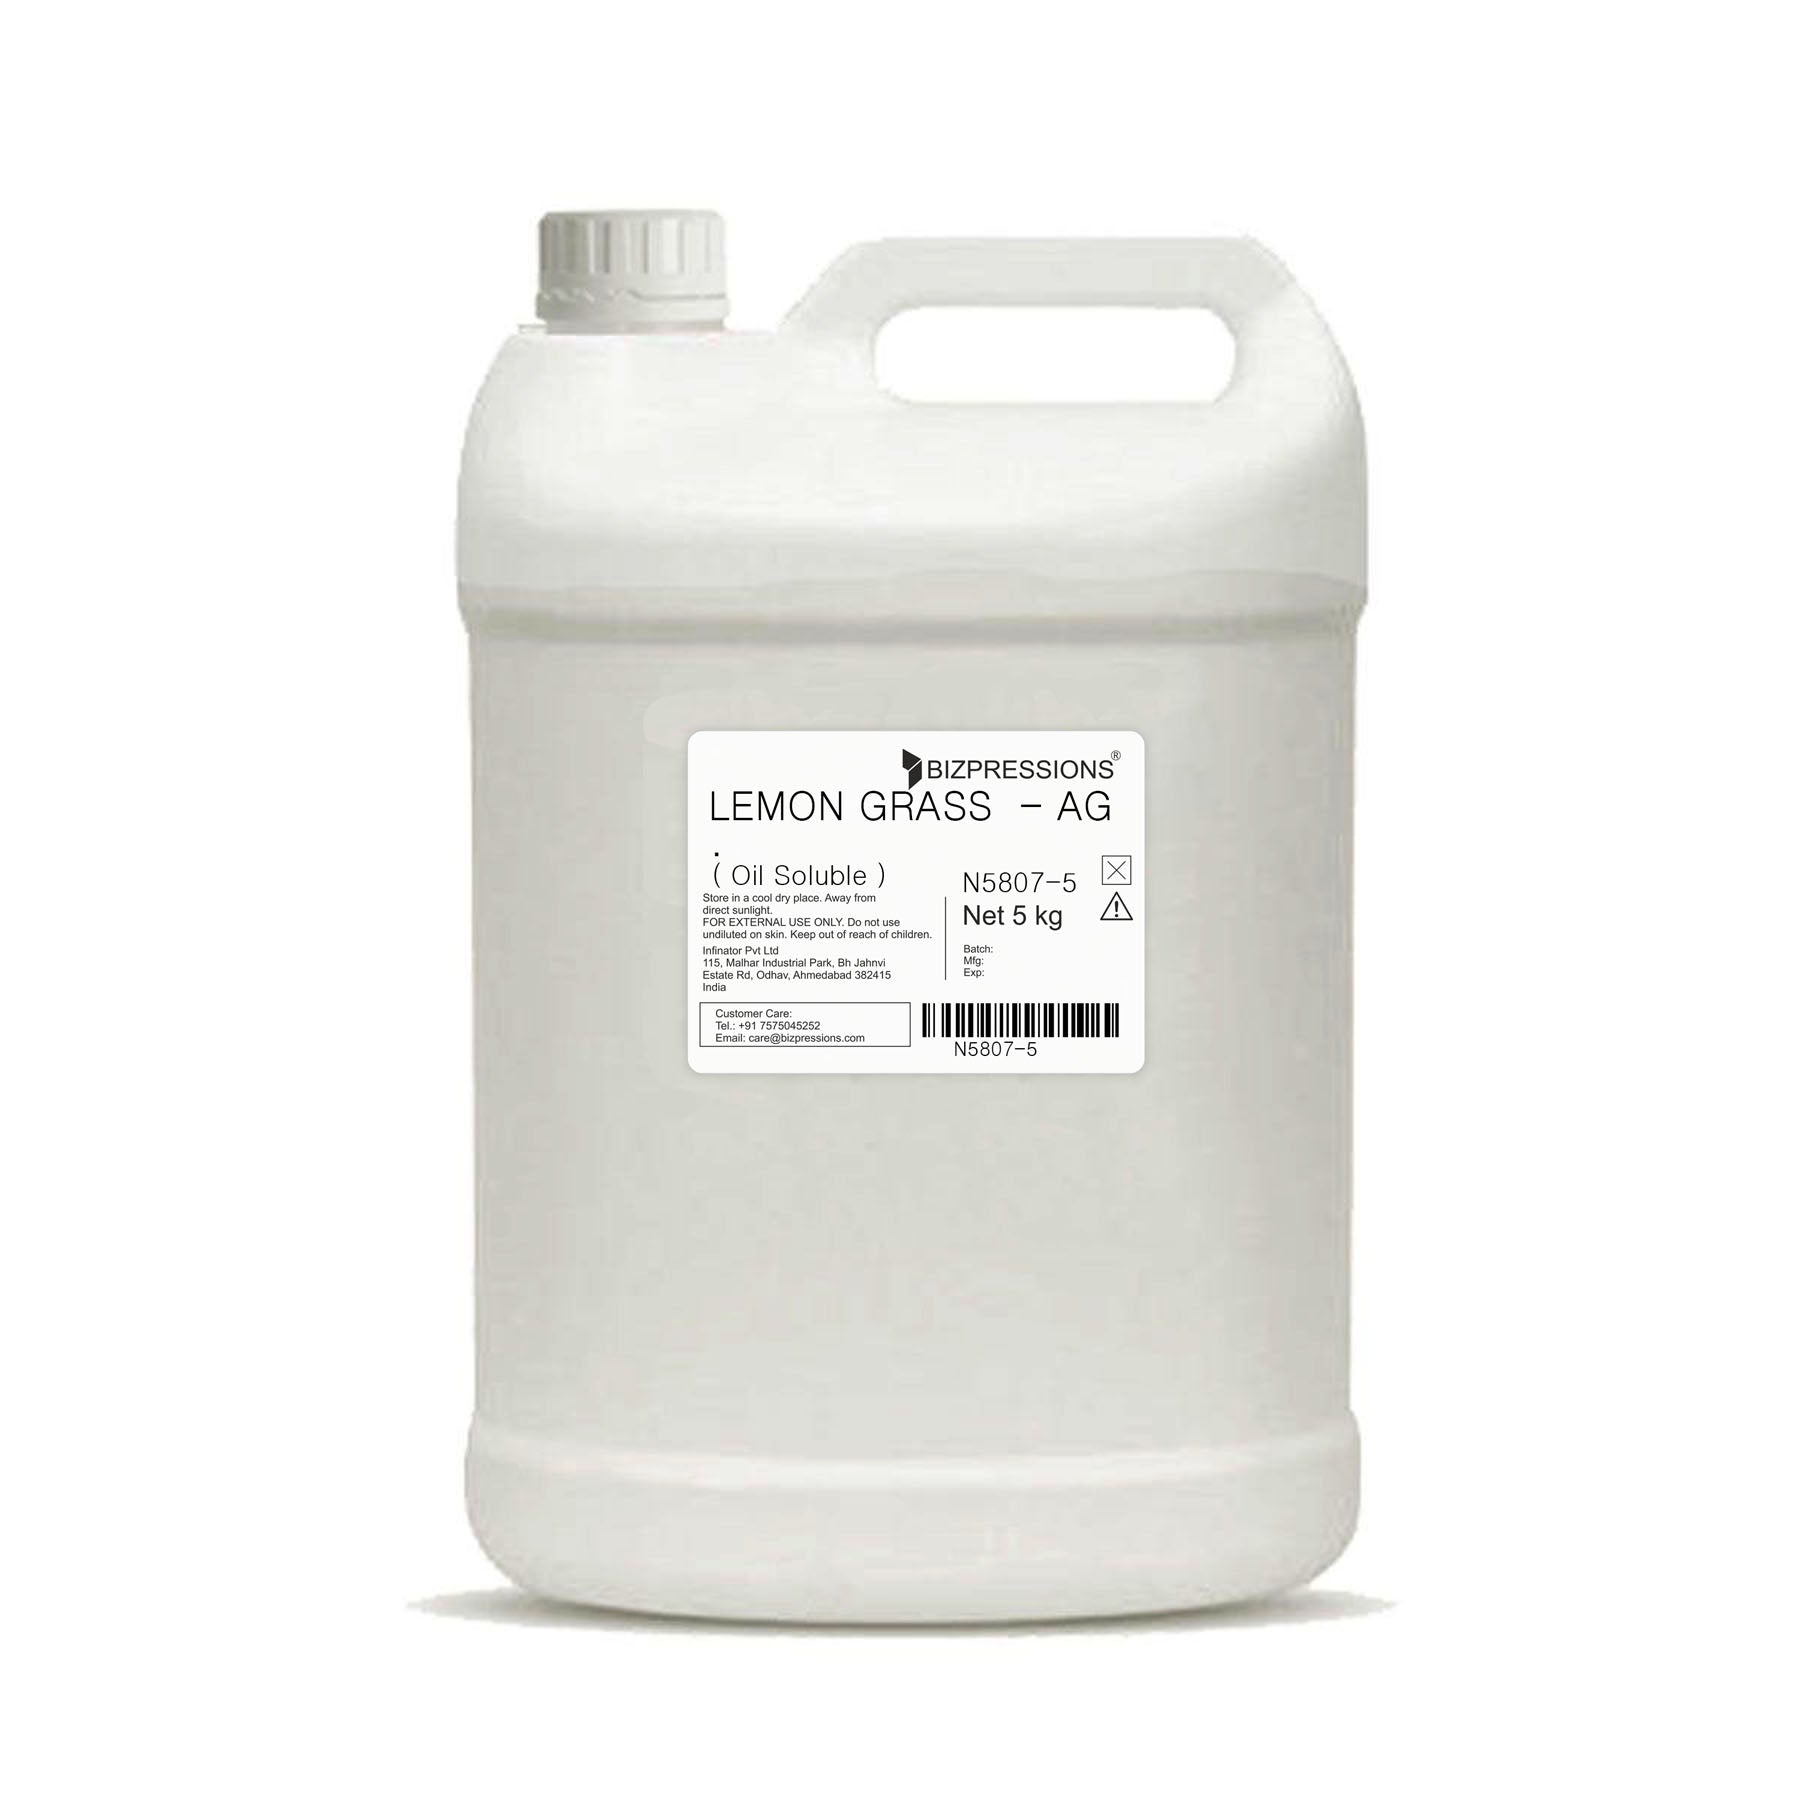 LEMON GRASS - AG. - Fragrance ( Oil Soluble ) - 5 kg